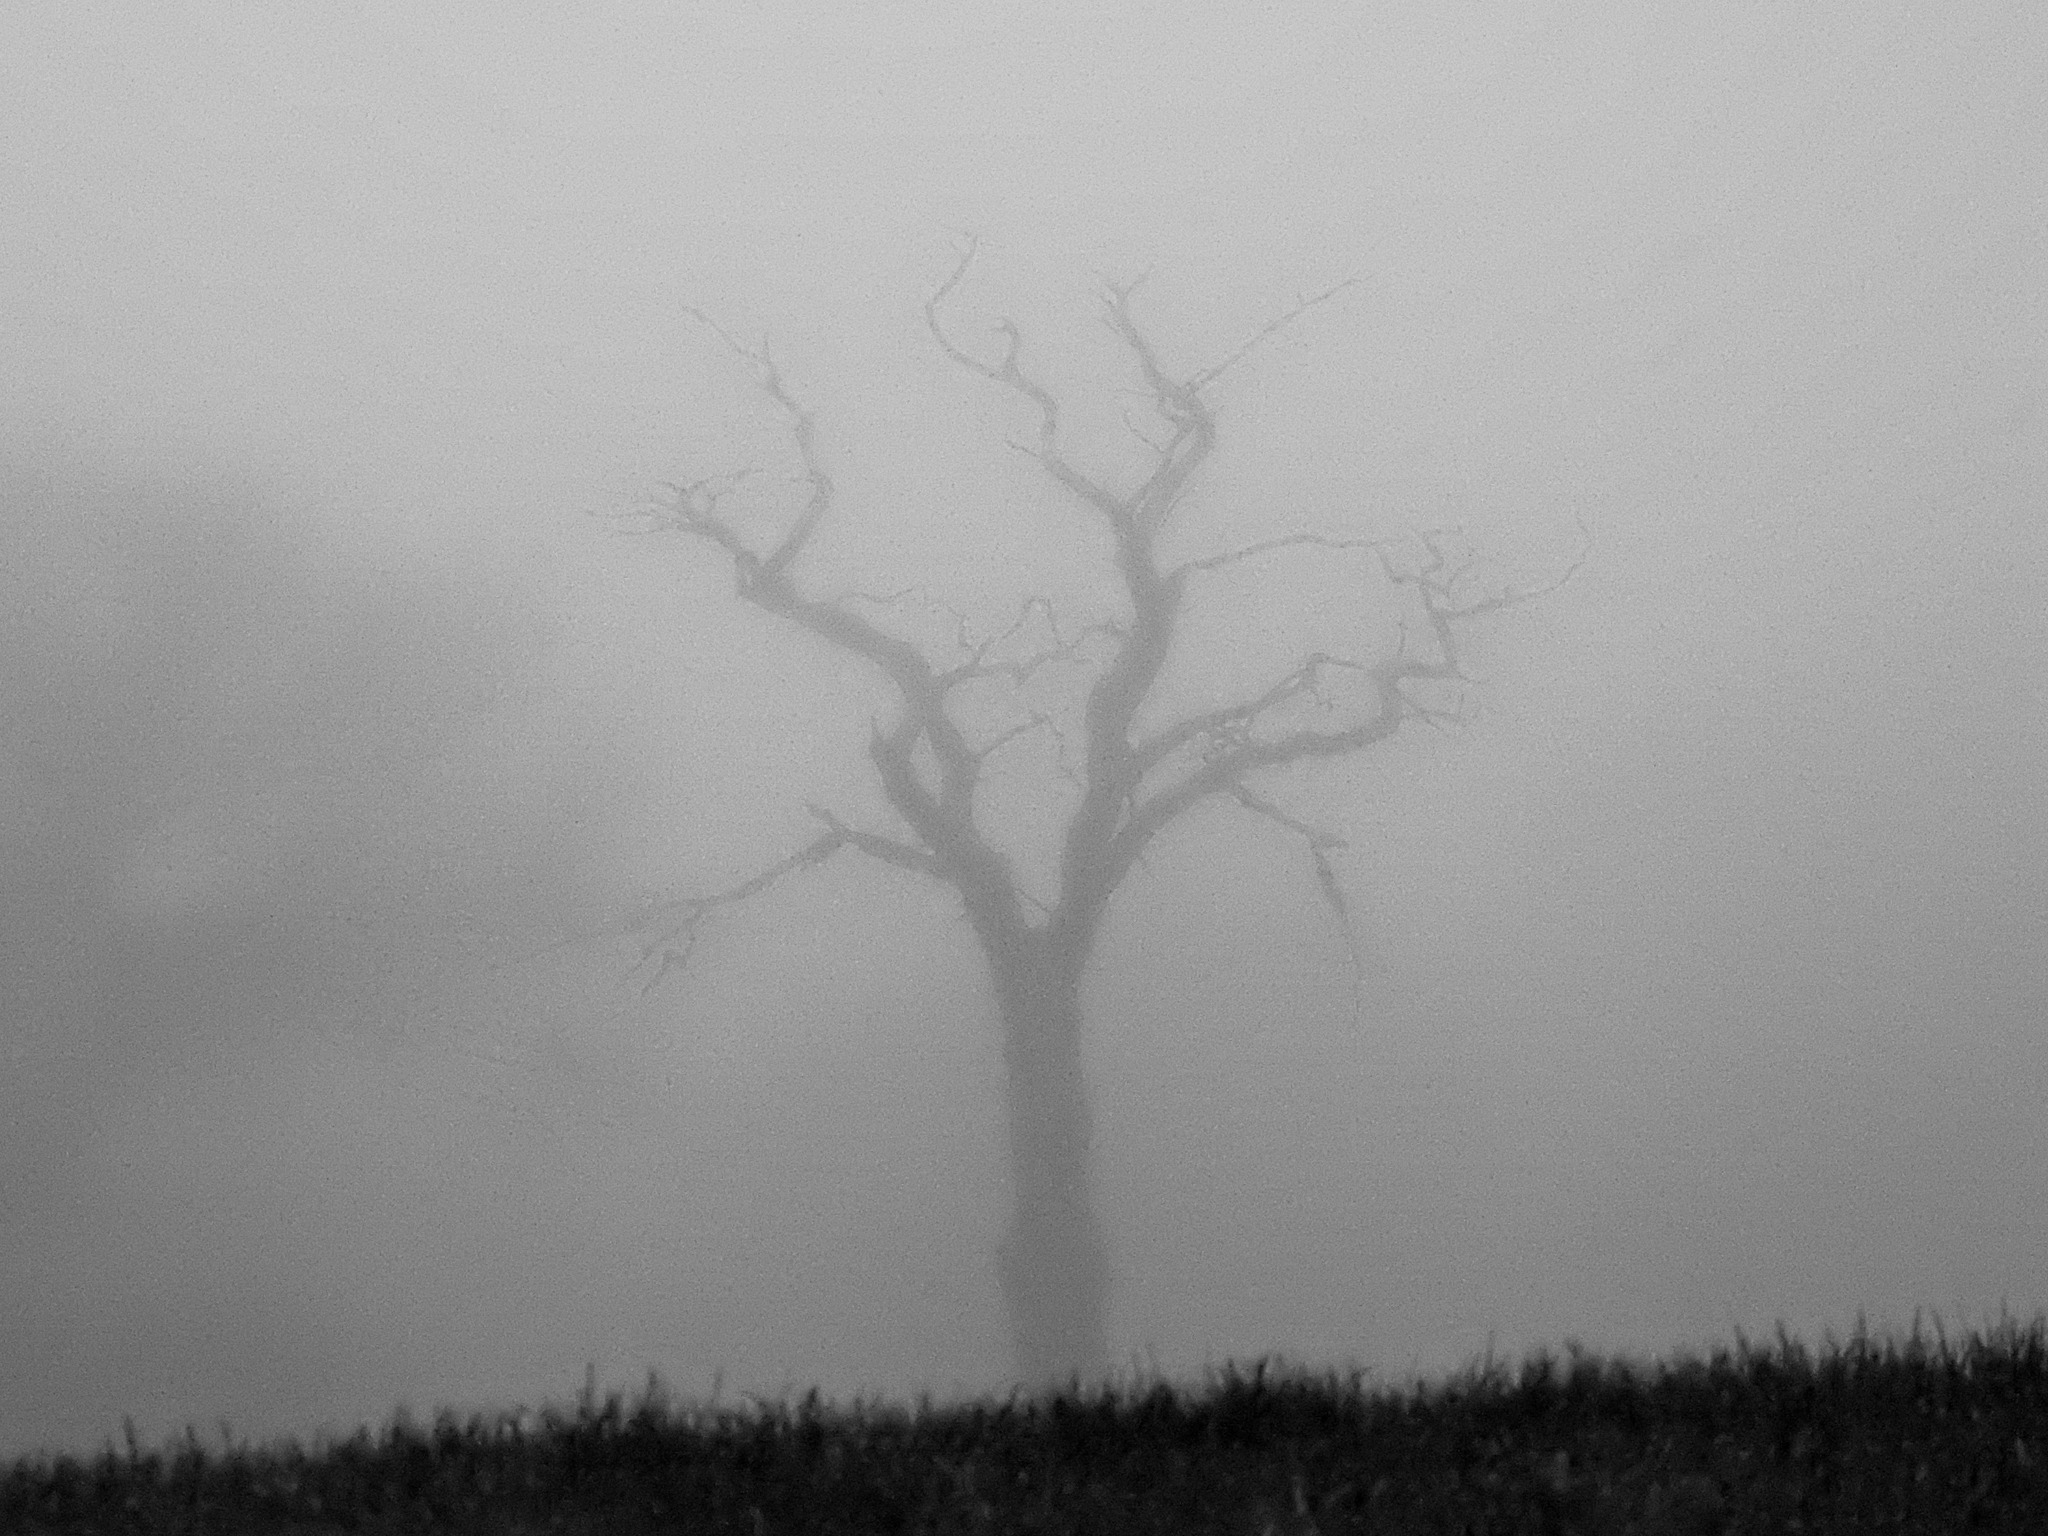 A dead tree in Winsford by Lynzi Blake